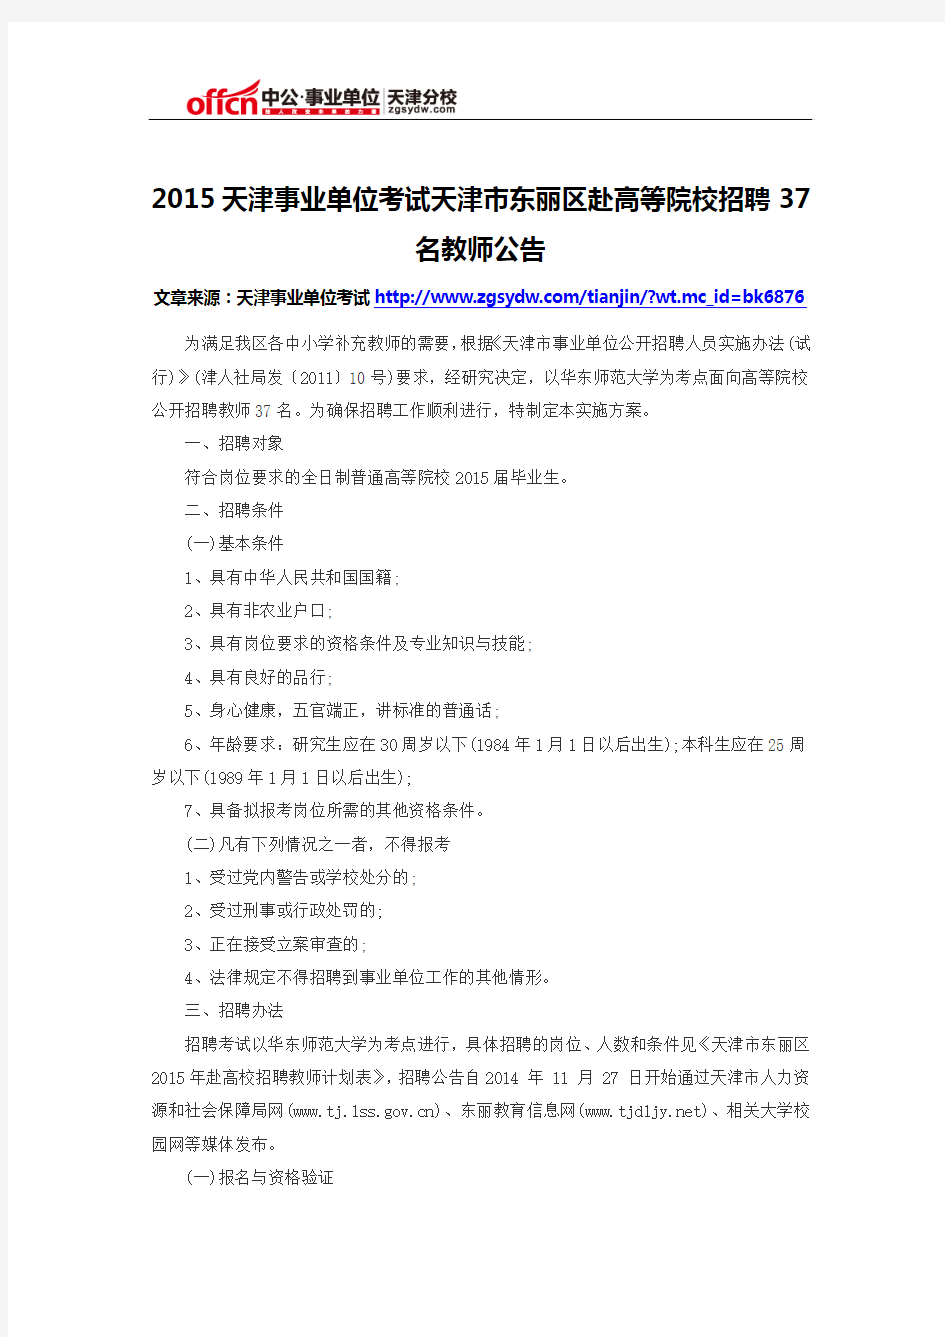 2015天津事业单位考试天津市滨海新区赴高等院校招聘教师159人公告